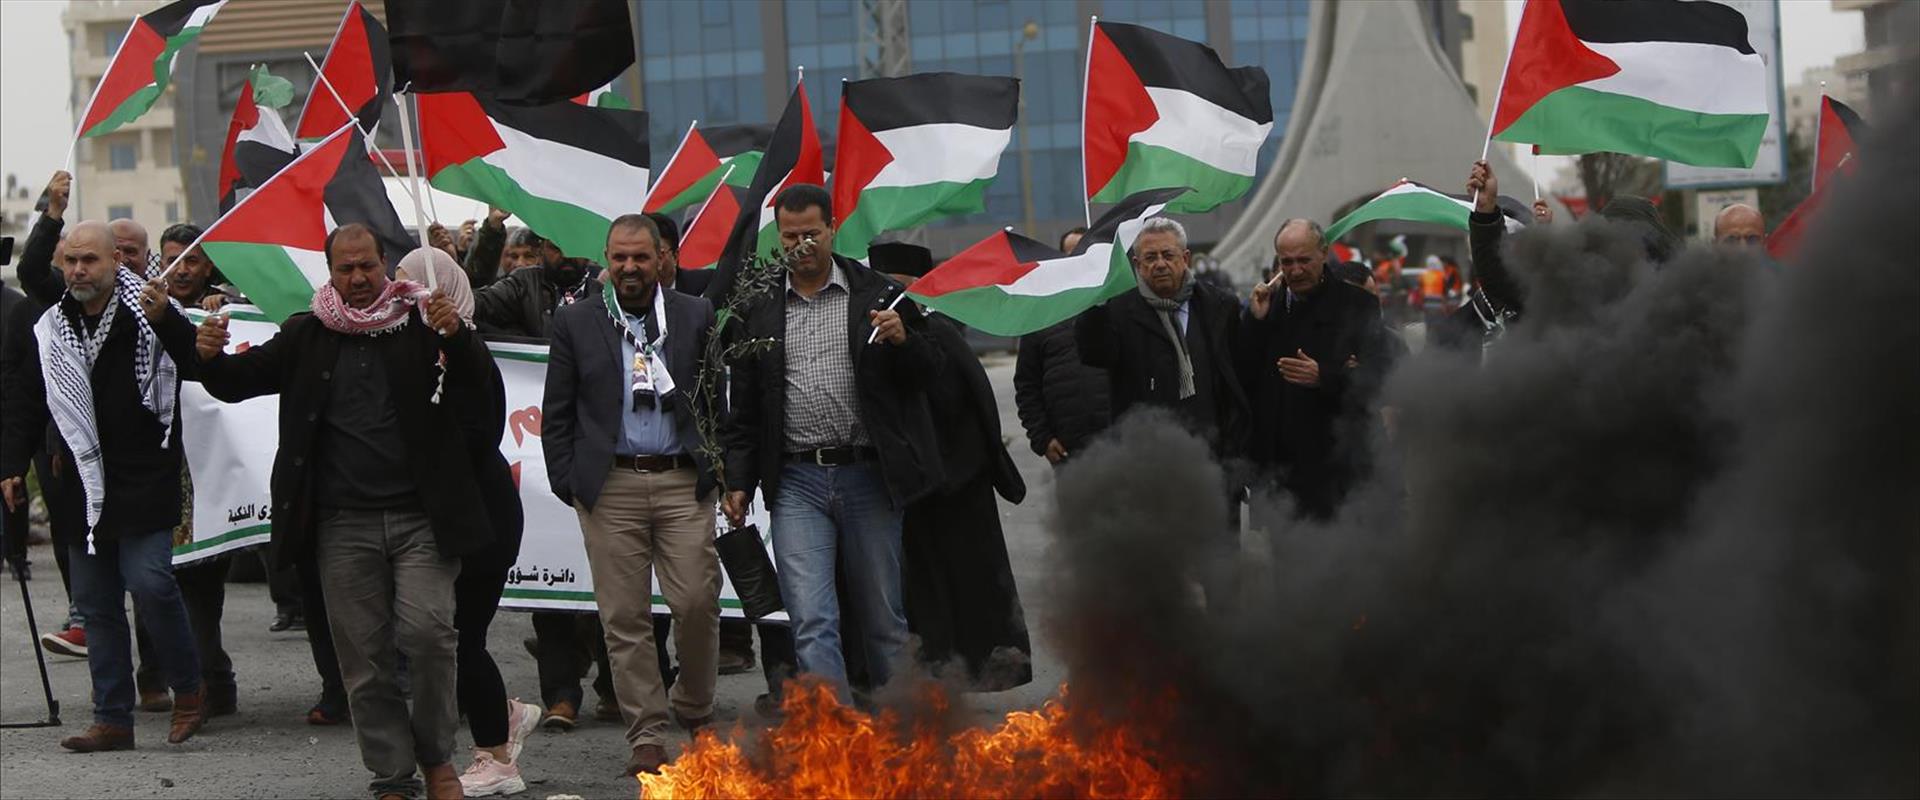 מפגינים פלסטינים ברמאללה ביום האדמה, לפני חודשיים